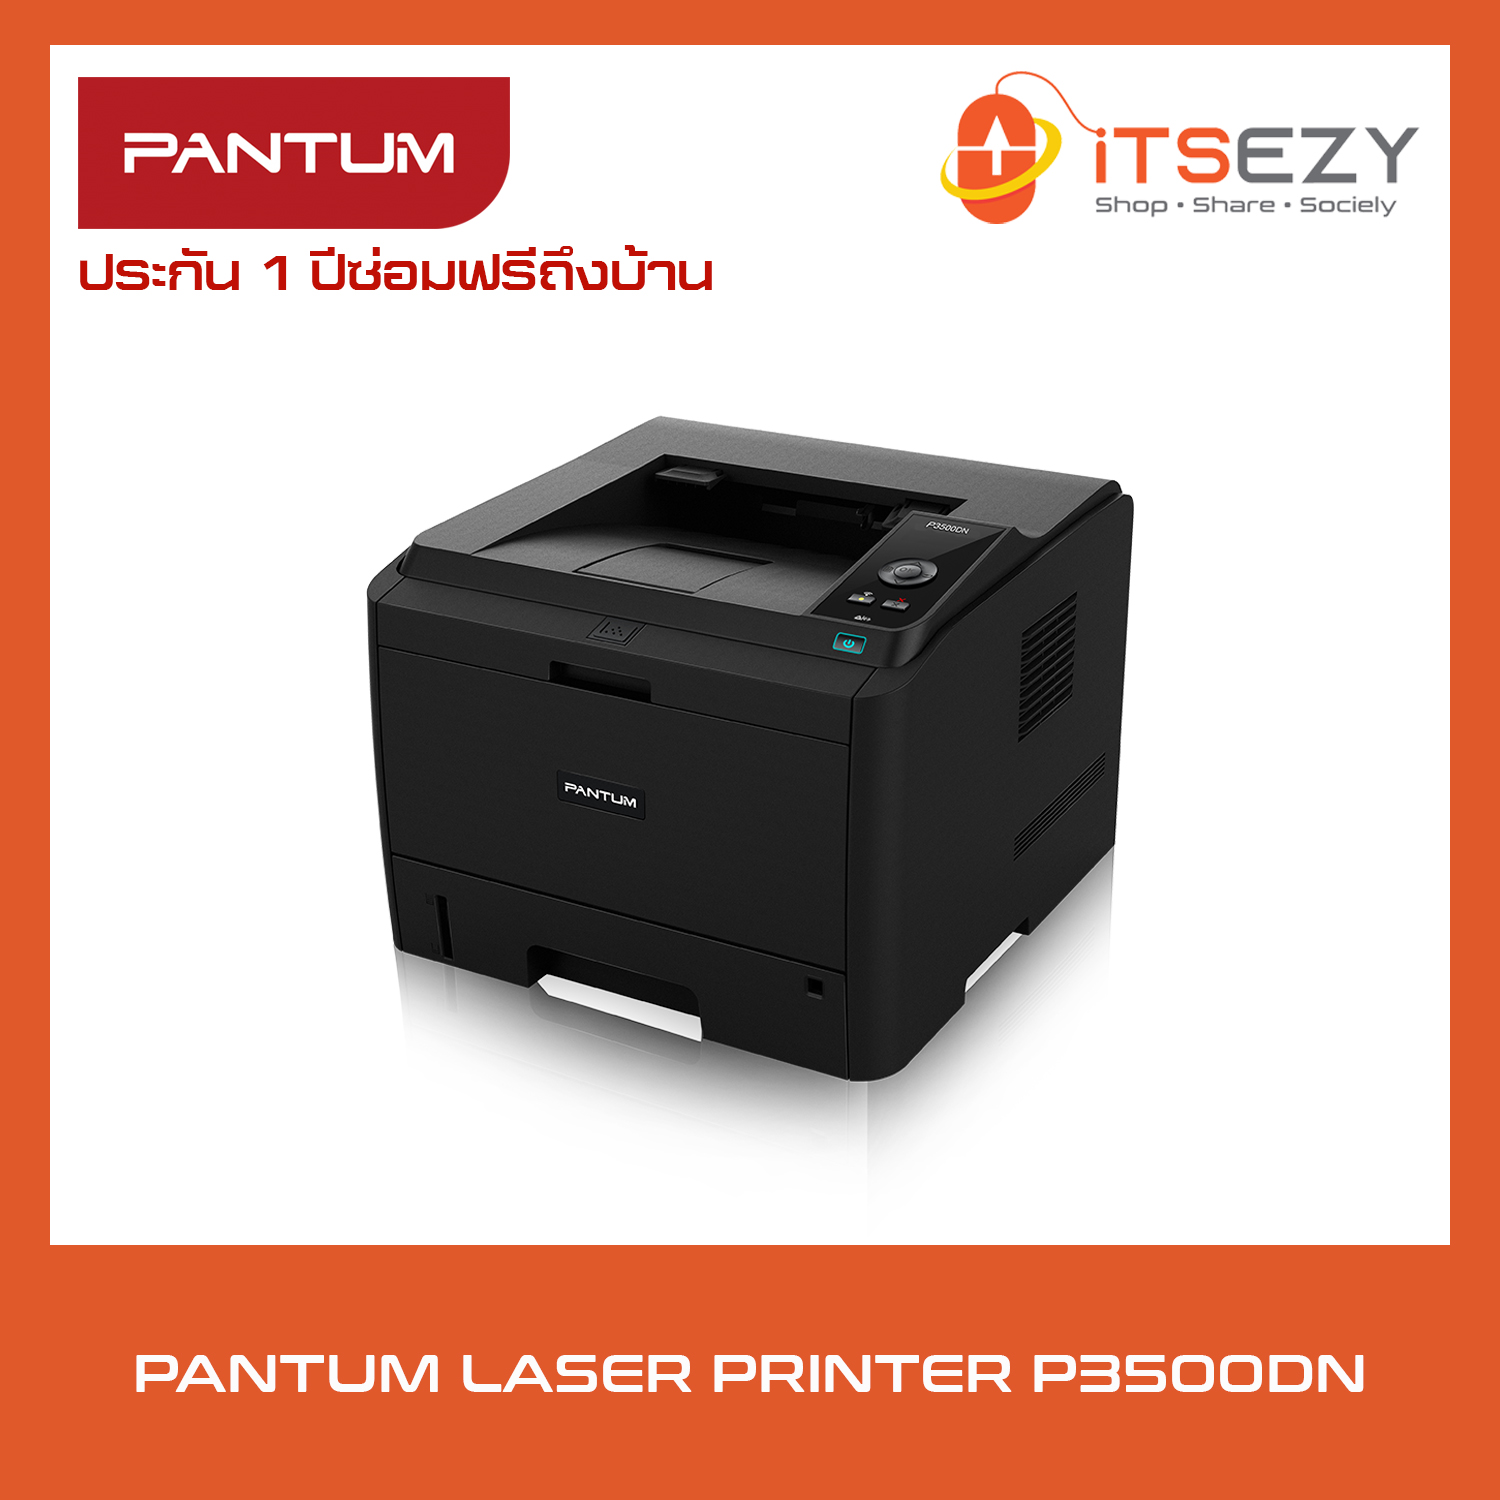 PANTUM P3500DN เครื่องพิมพ์เลเซอร์ ขาว-ดำ พร้อมส่ง (ออกใบกำกับภาษีได้) [ICT ข้อ 42 งบประมาณ 7,900 บาท][ICT ข้อ 43 งบประมาณ 16,000 บาท]